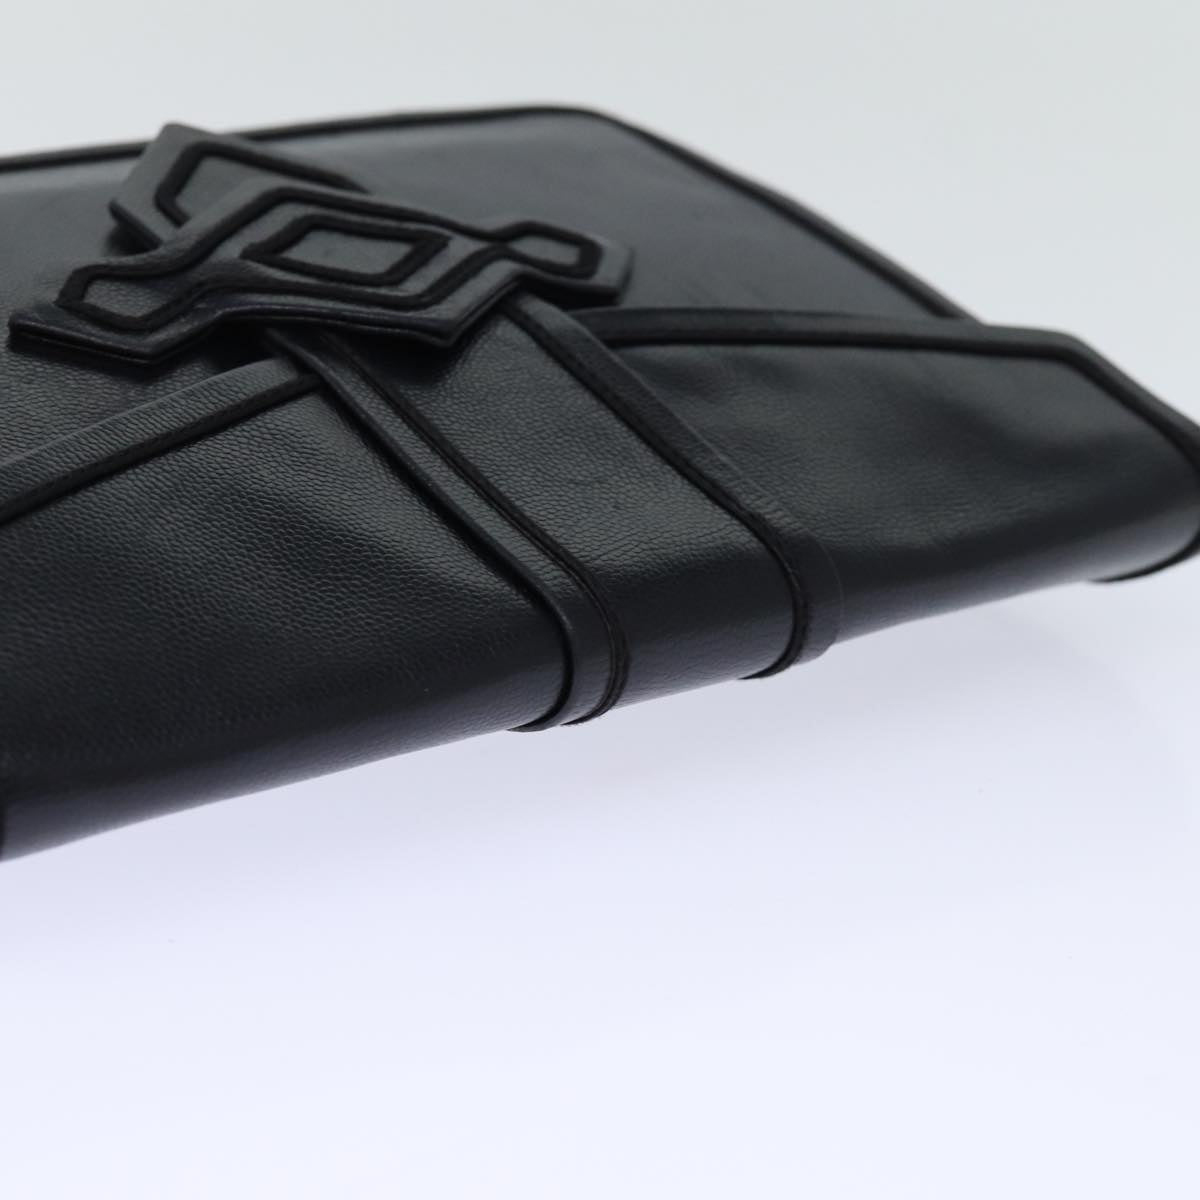 SAINT LAURENT Clutch Bag Leather Black Auth 74100